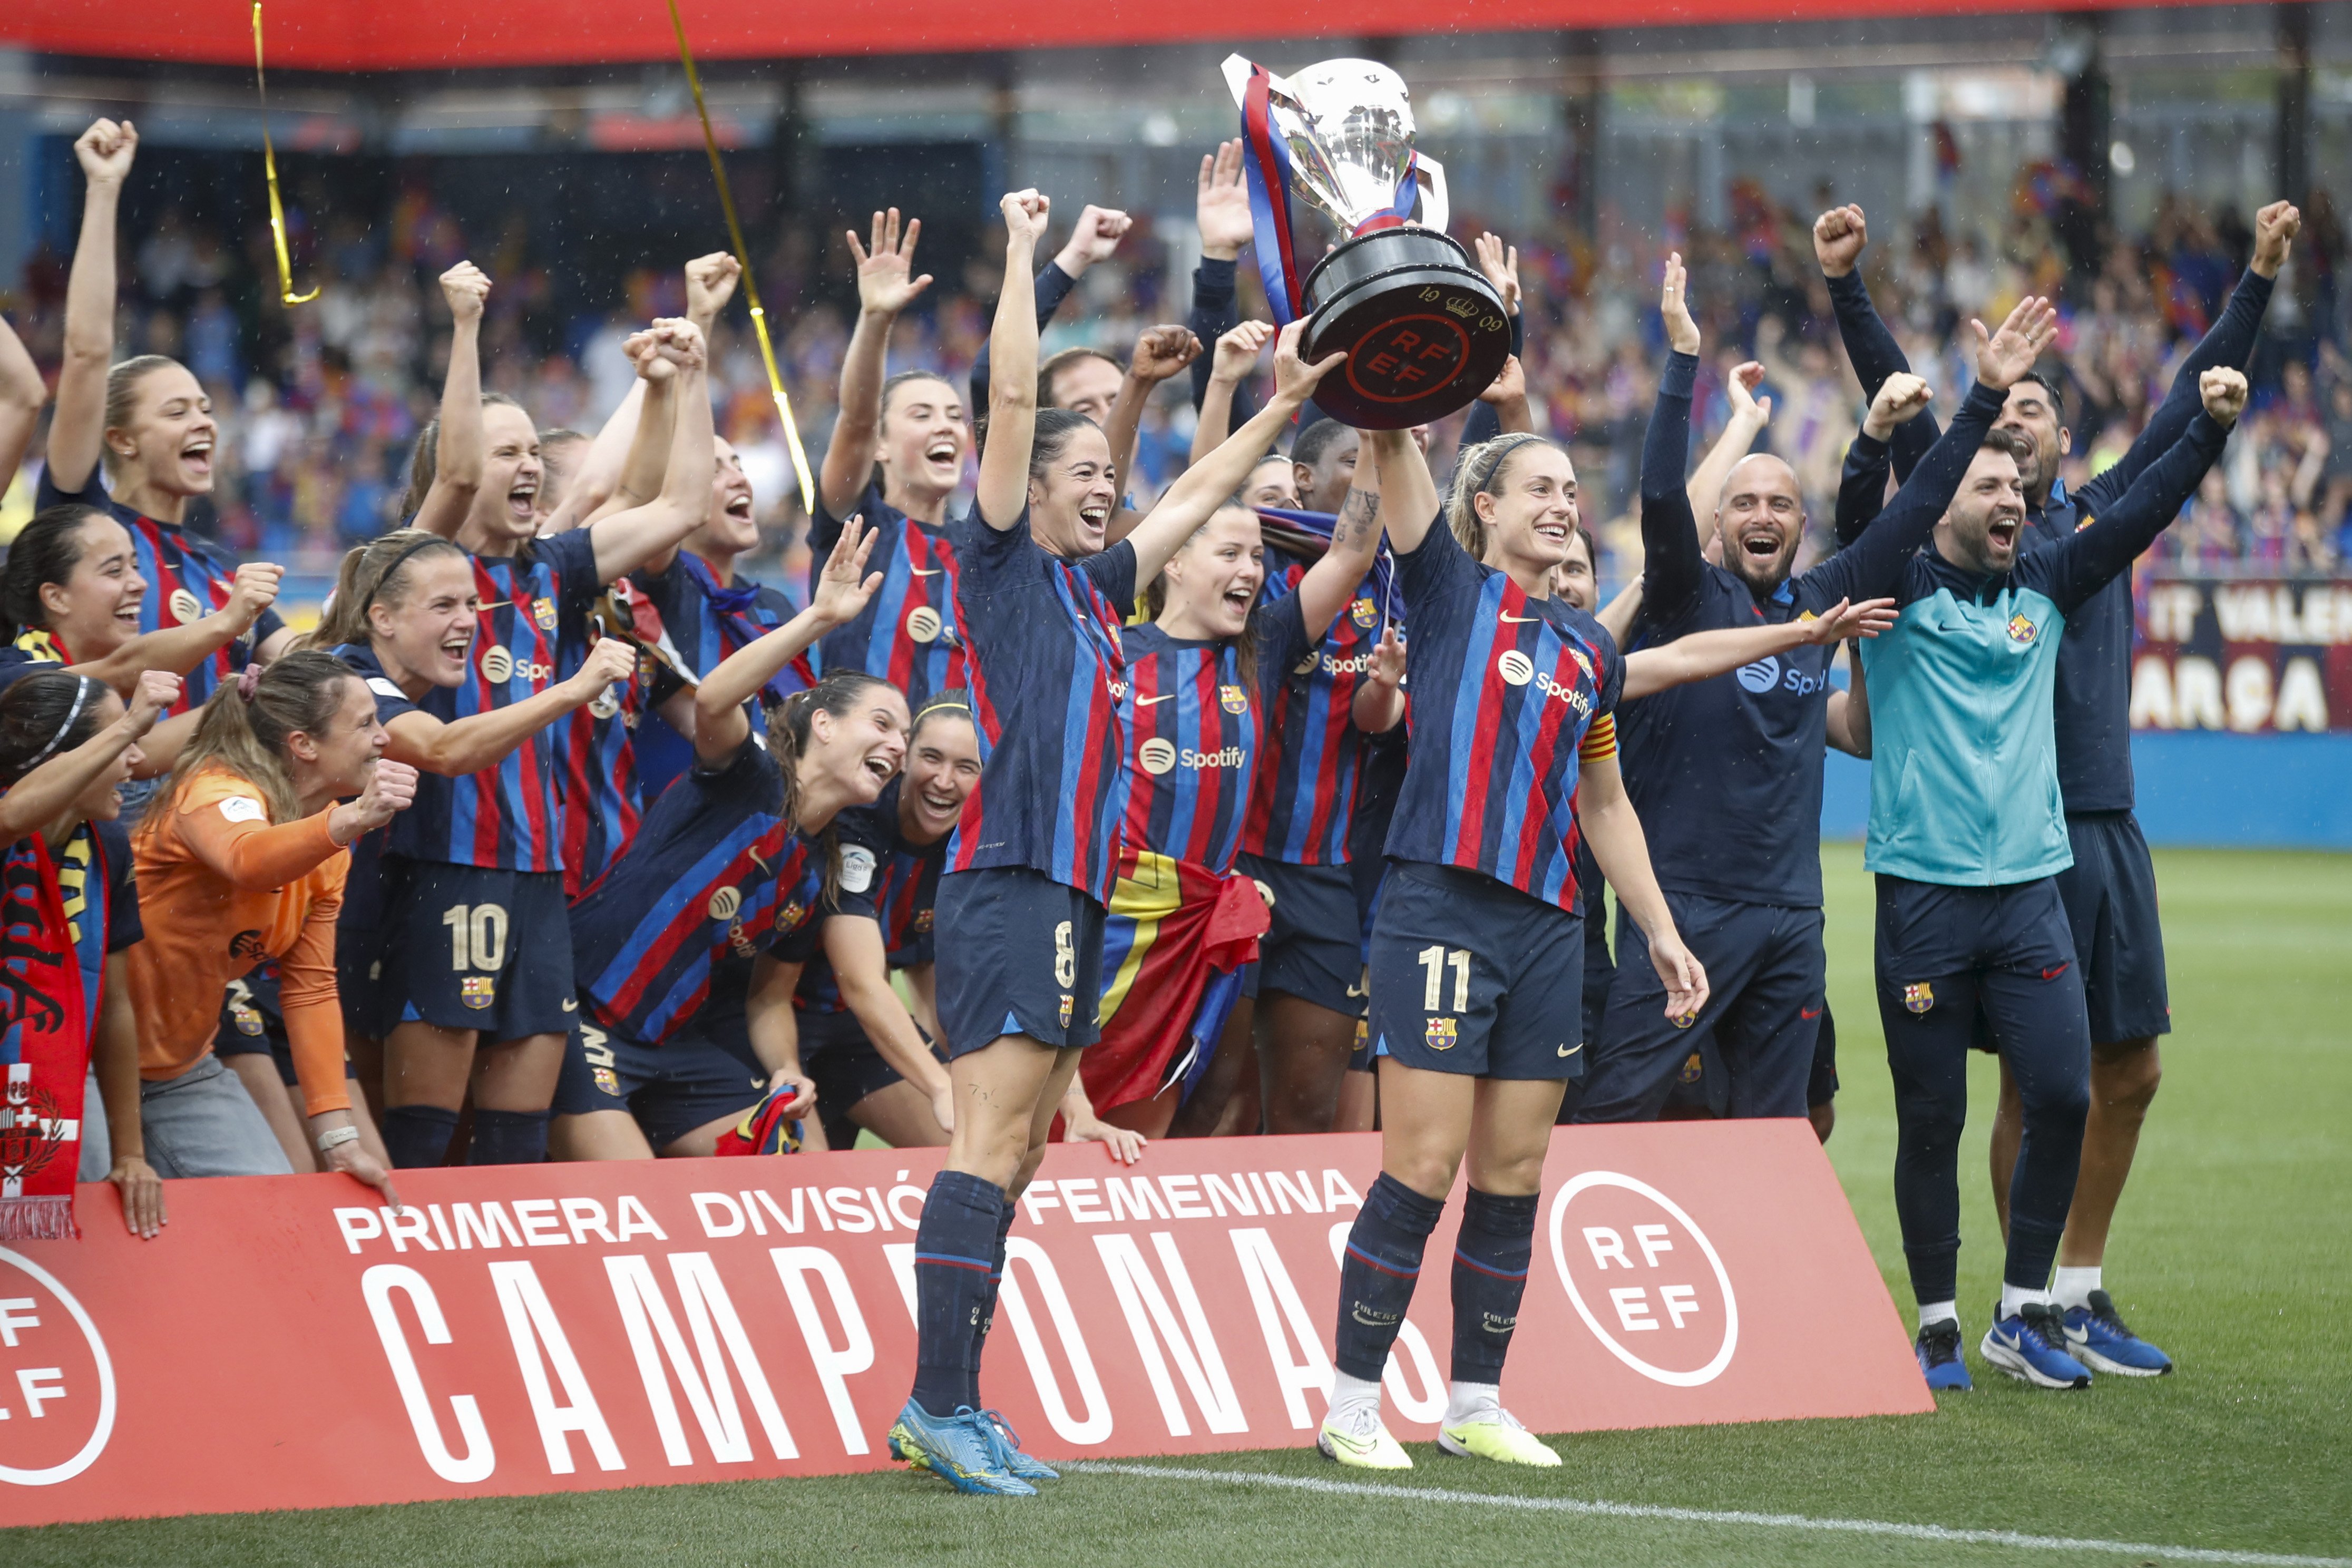 El Barça femení segueix fent història i conquereix la seva vuitena Lliga